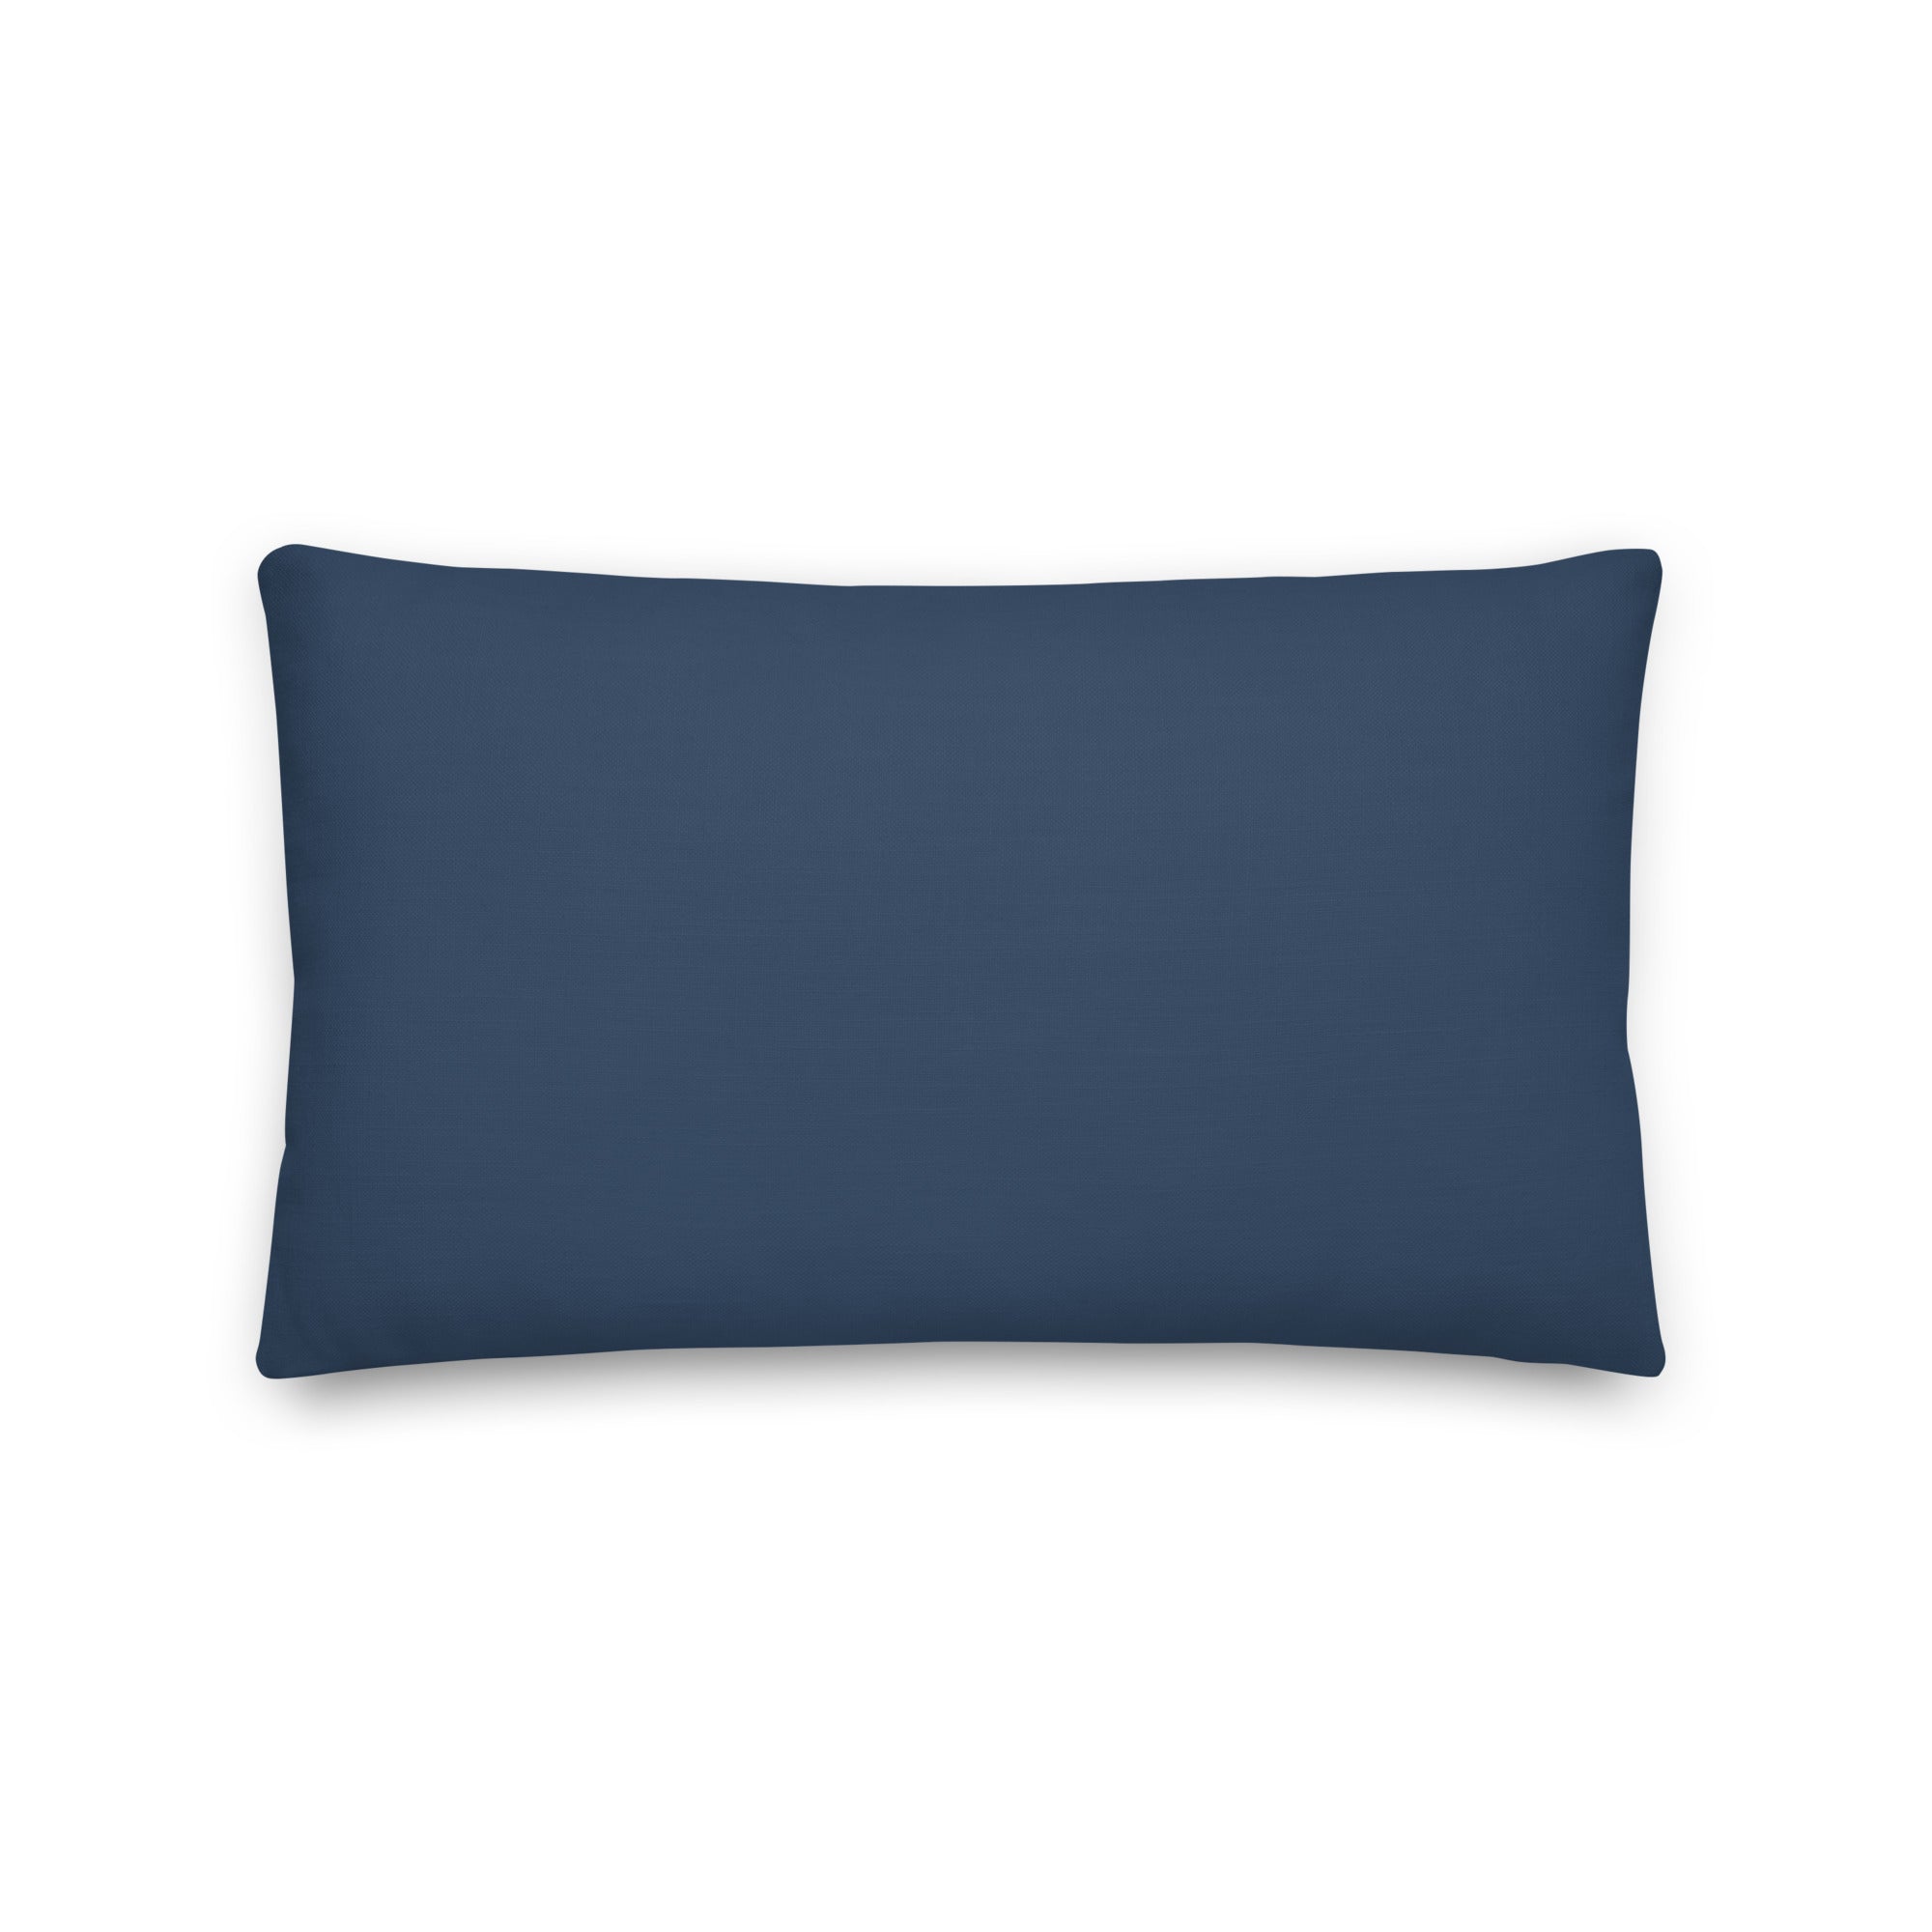 Blue Waves - Premium Pillow - Renée Laurént